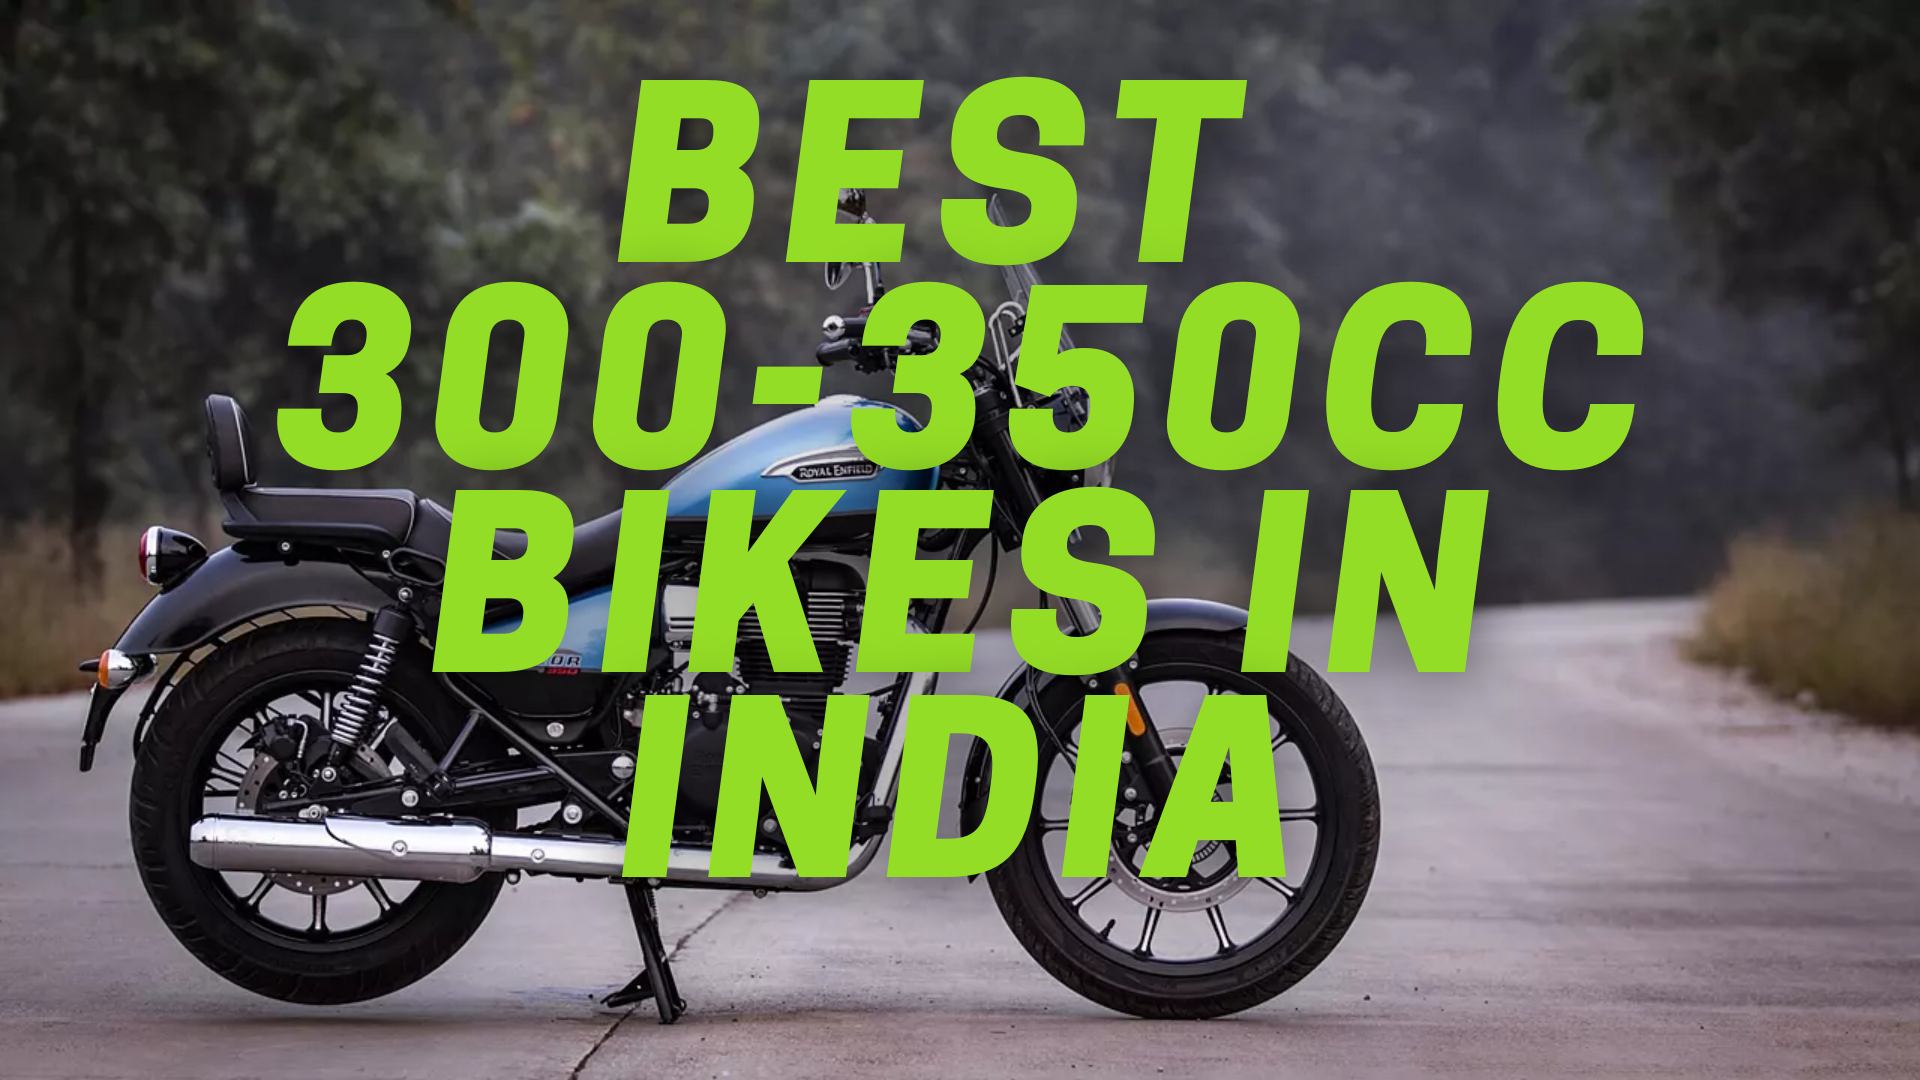 Top 5 Best 300-350cc Bikes In India